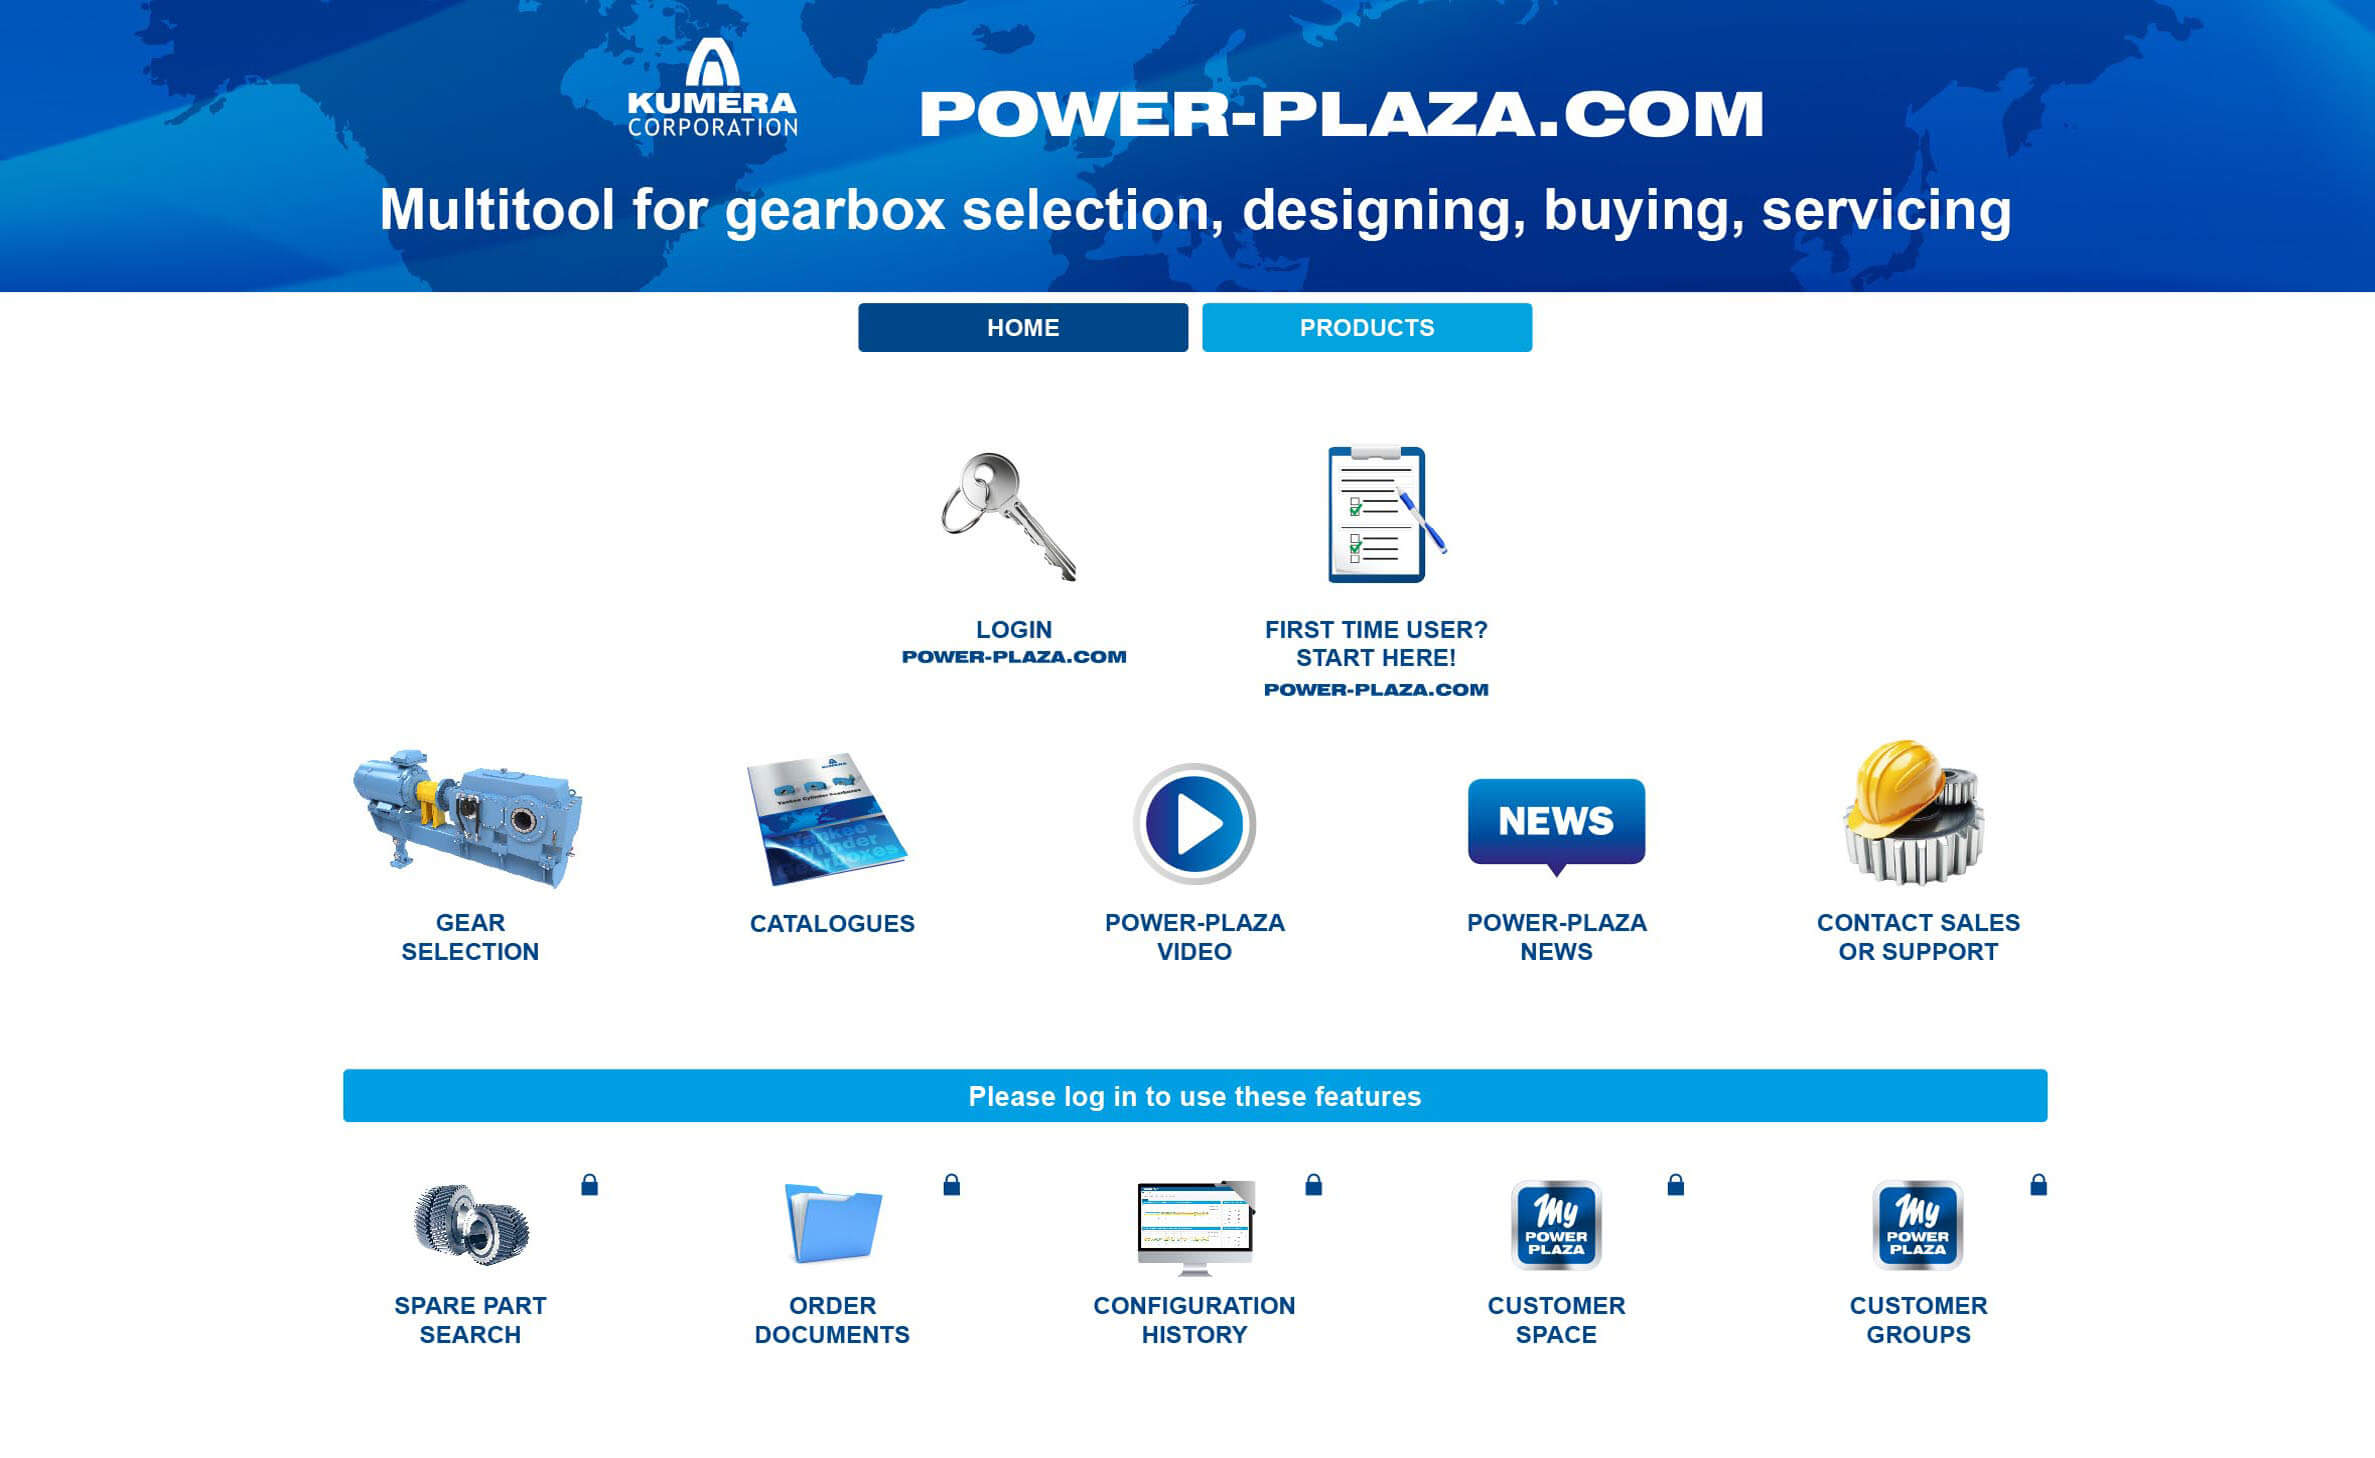 Kumera Power Plaza - Online-Getriebeauswahl-Portal. Kumera Power-Plaza ist der Online-Marktplatz für mechanische Getriebeprodukte von Kumera und die dazugehörigen Ersatzteile. www.power-plaza.com